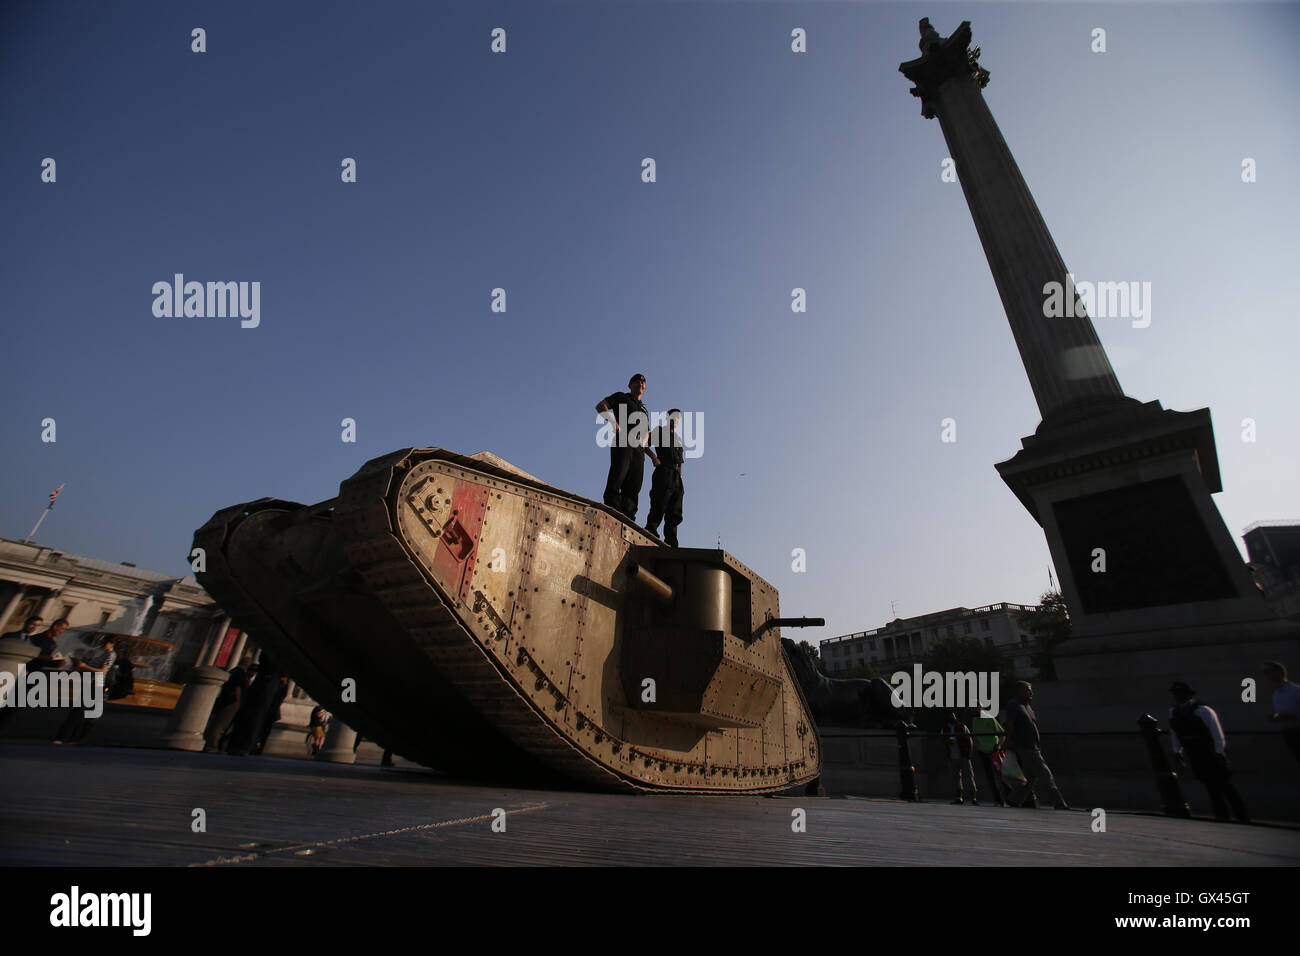 Mitglieder des Royal Tank Regiment stehen auf einem Replikat ersten Weltkrieg Mark IV Panzer auf dem Londoner Trafalgar Square anlässlich der Hundertjahrfeier der eines gepanzerten Fahrzeugs erstmals Einsatz in der Schlacht an der Somme. Stockfoto